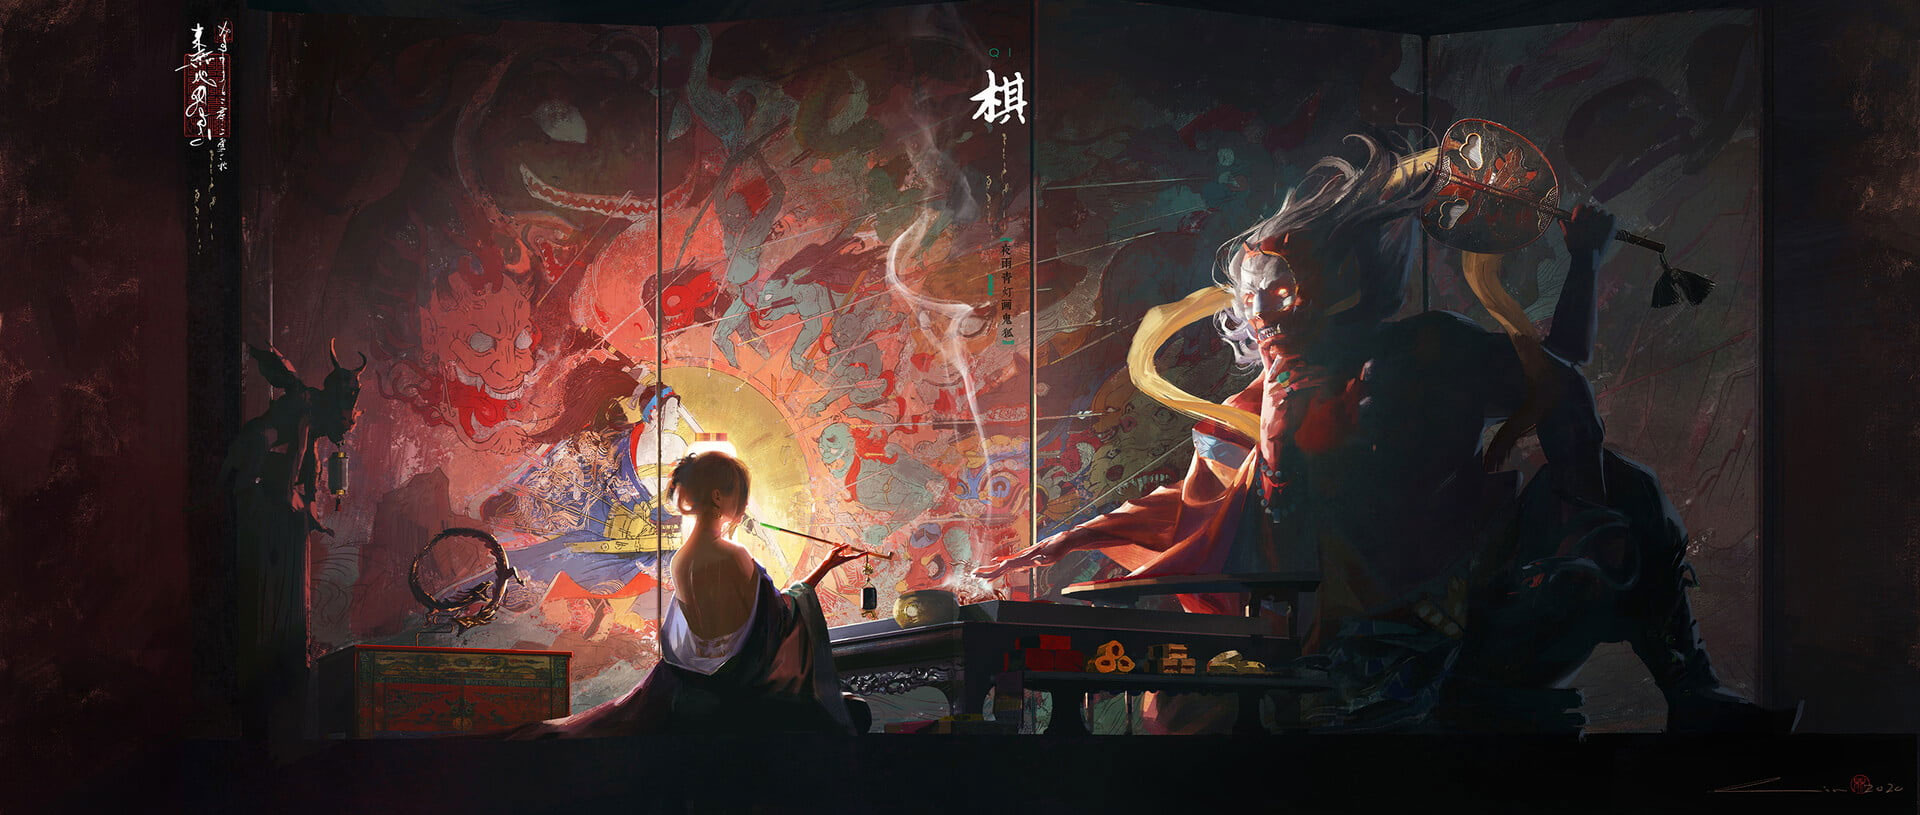 Wallpaper Painting, Smoking, Smoke, Samurai, Sword, Arrows